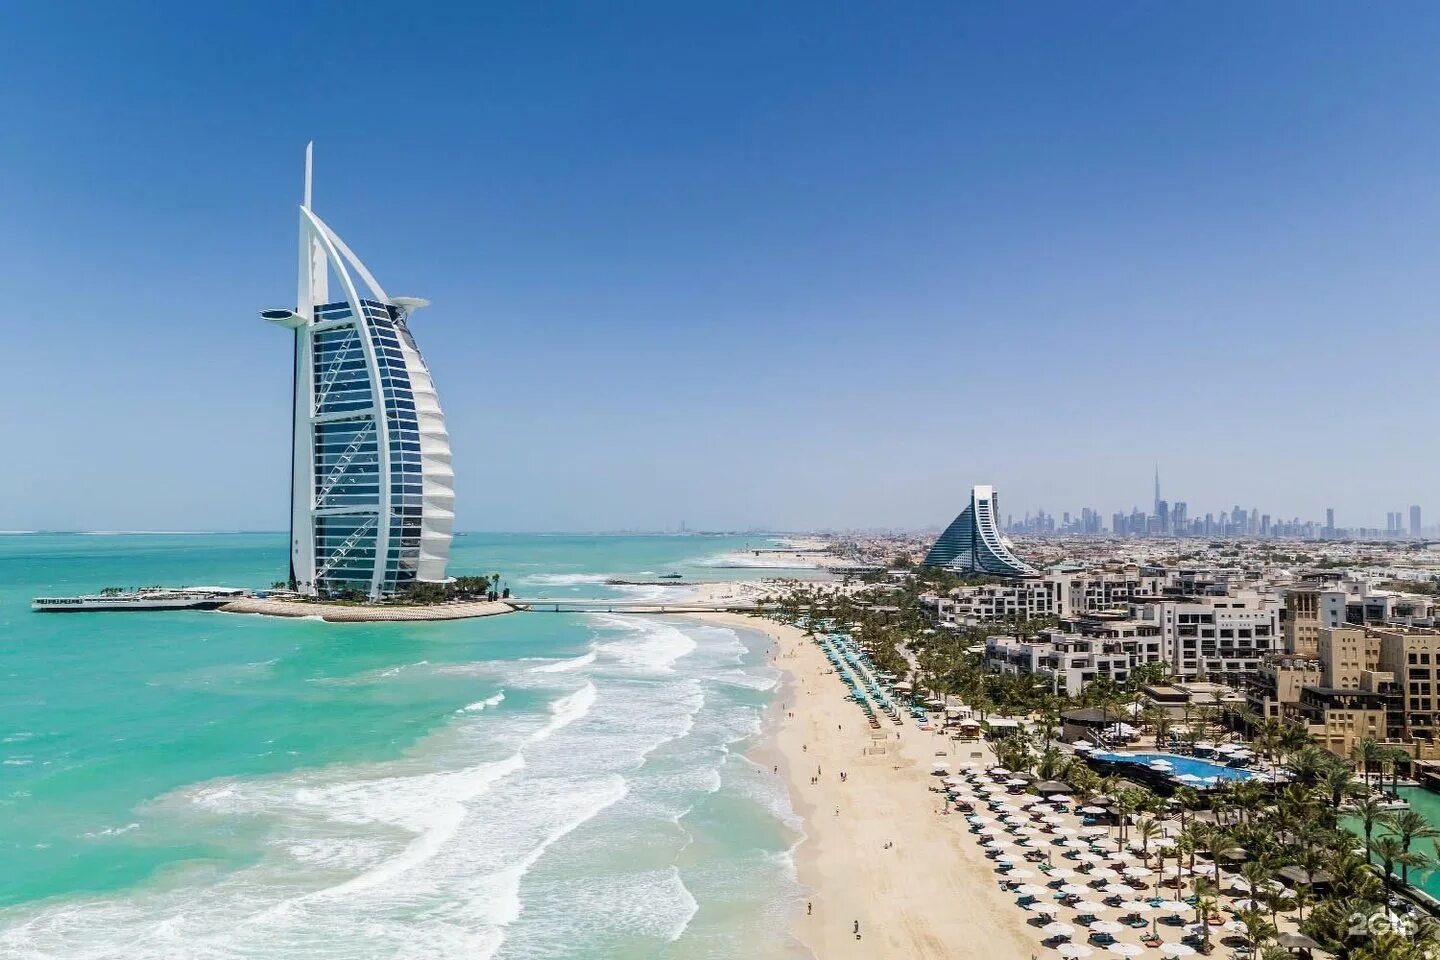 Бенгати дубай. Дубай Джумейра Бич. Отель в Дубае Jumeirah Beach Hotel. Пляж Джумейра Бич в Дубае. Пляж Бурдж Аль араб Дубай.